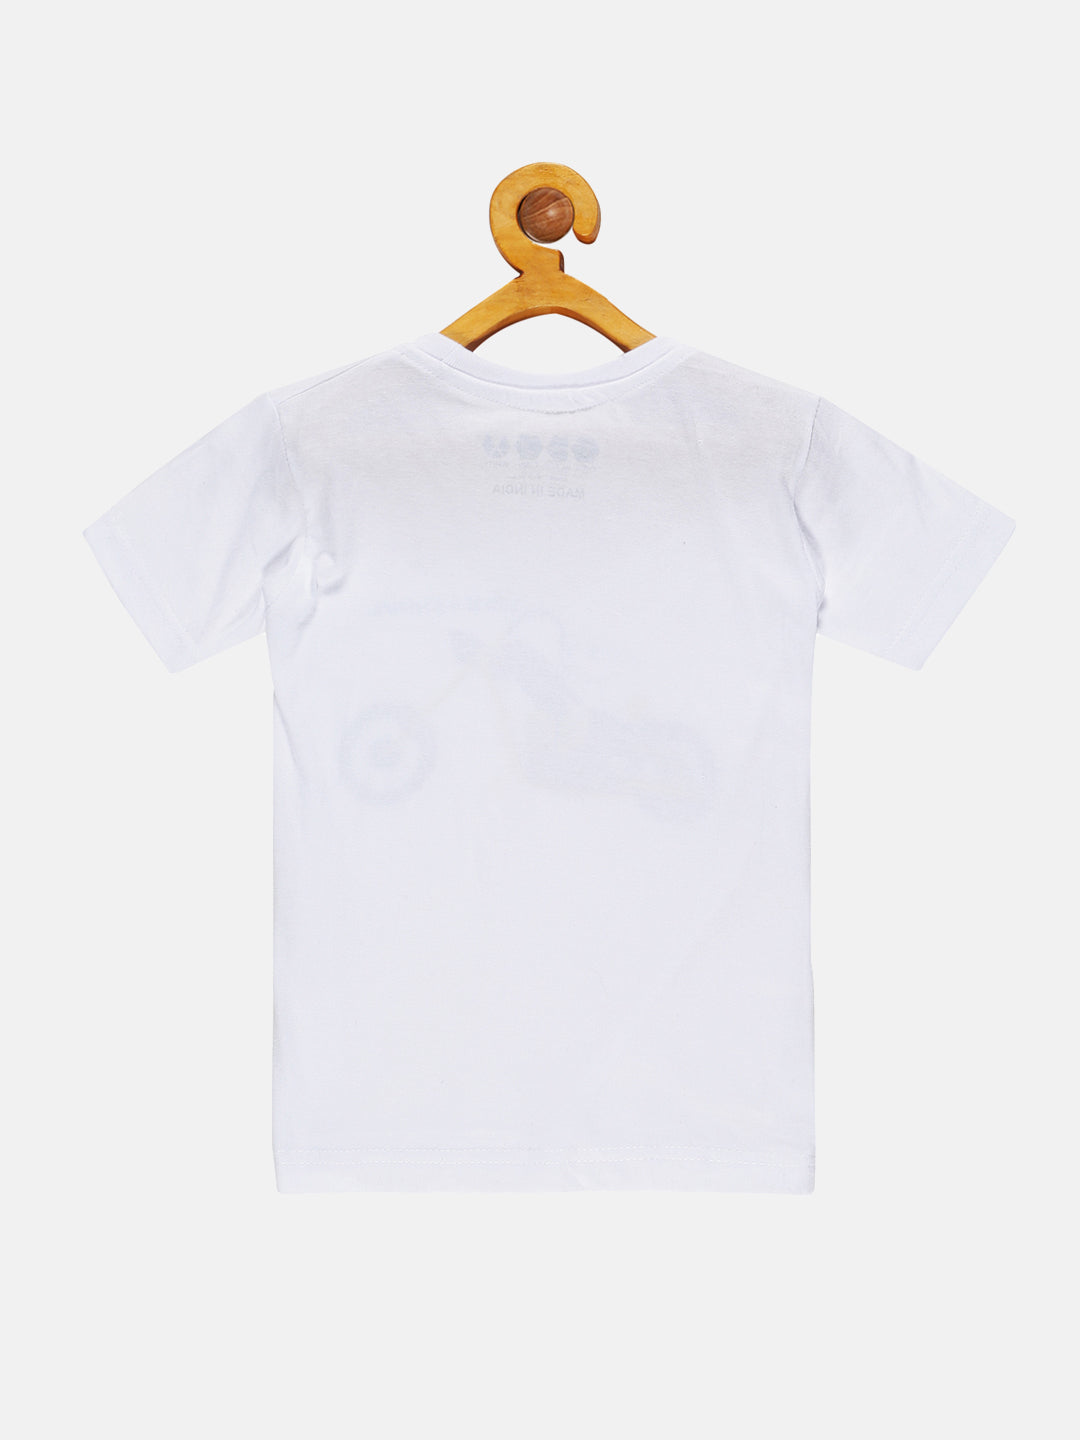 Kids Printed round neck white t-shirt